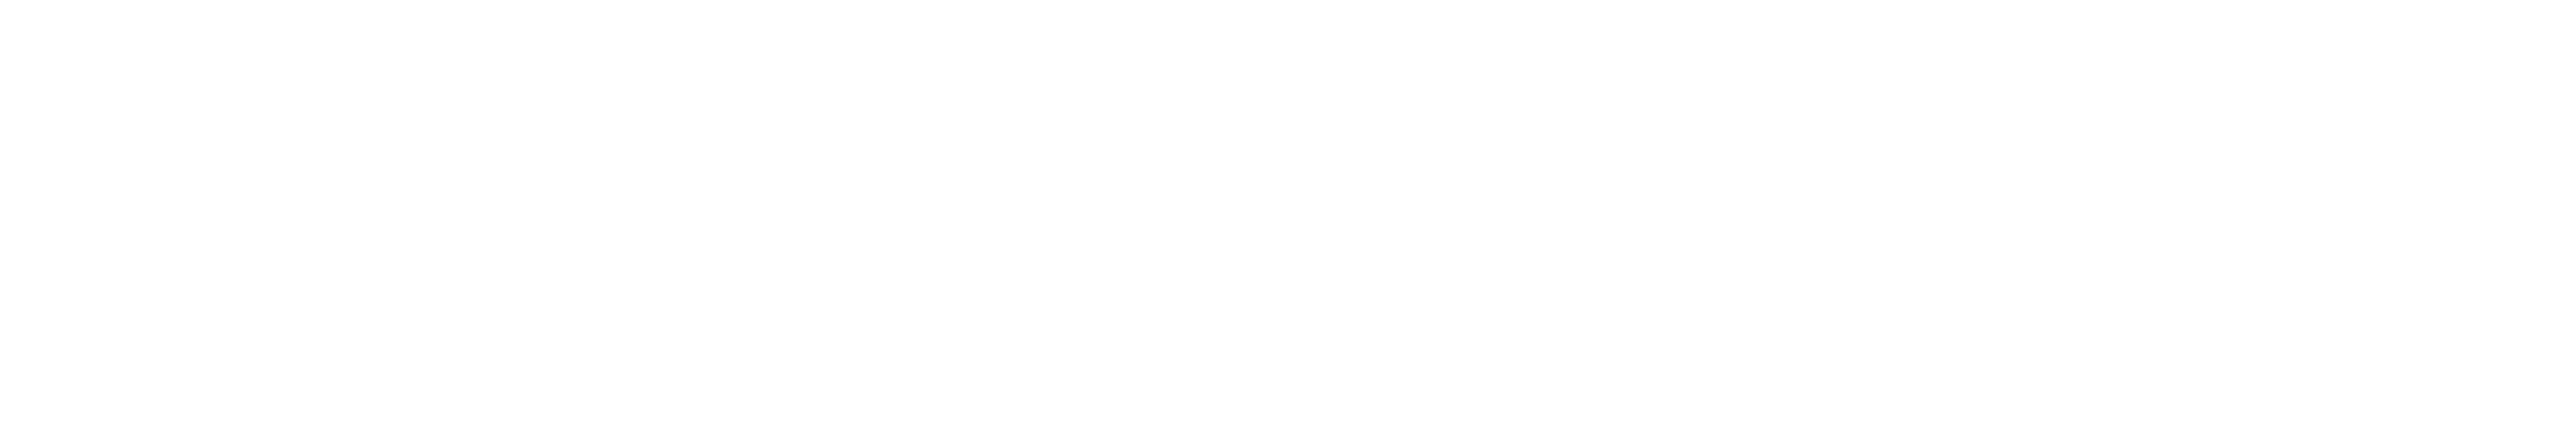 松本市のキャバクラ「Eight」のロゴ